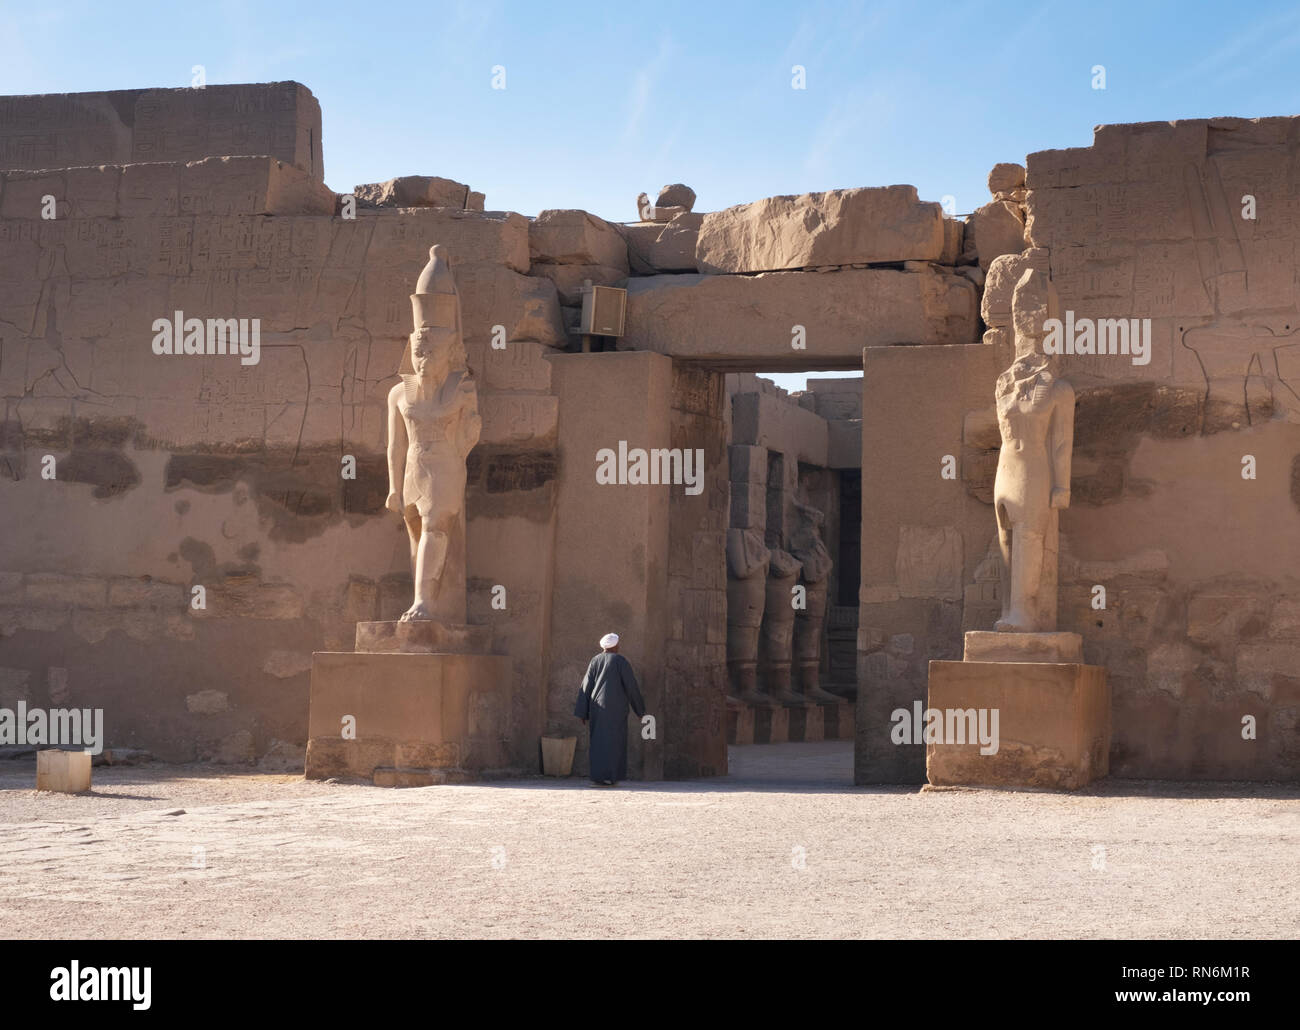 February 2019 - Karnak Temple, Egypt Stock Photo